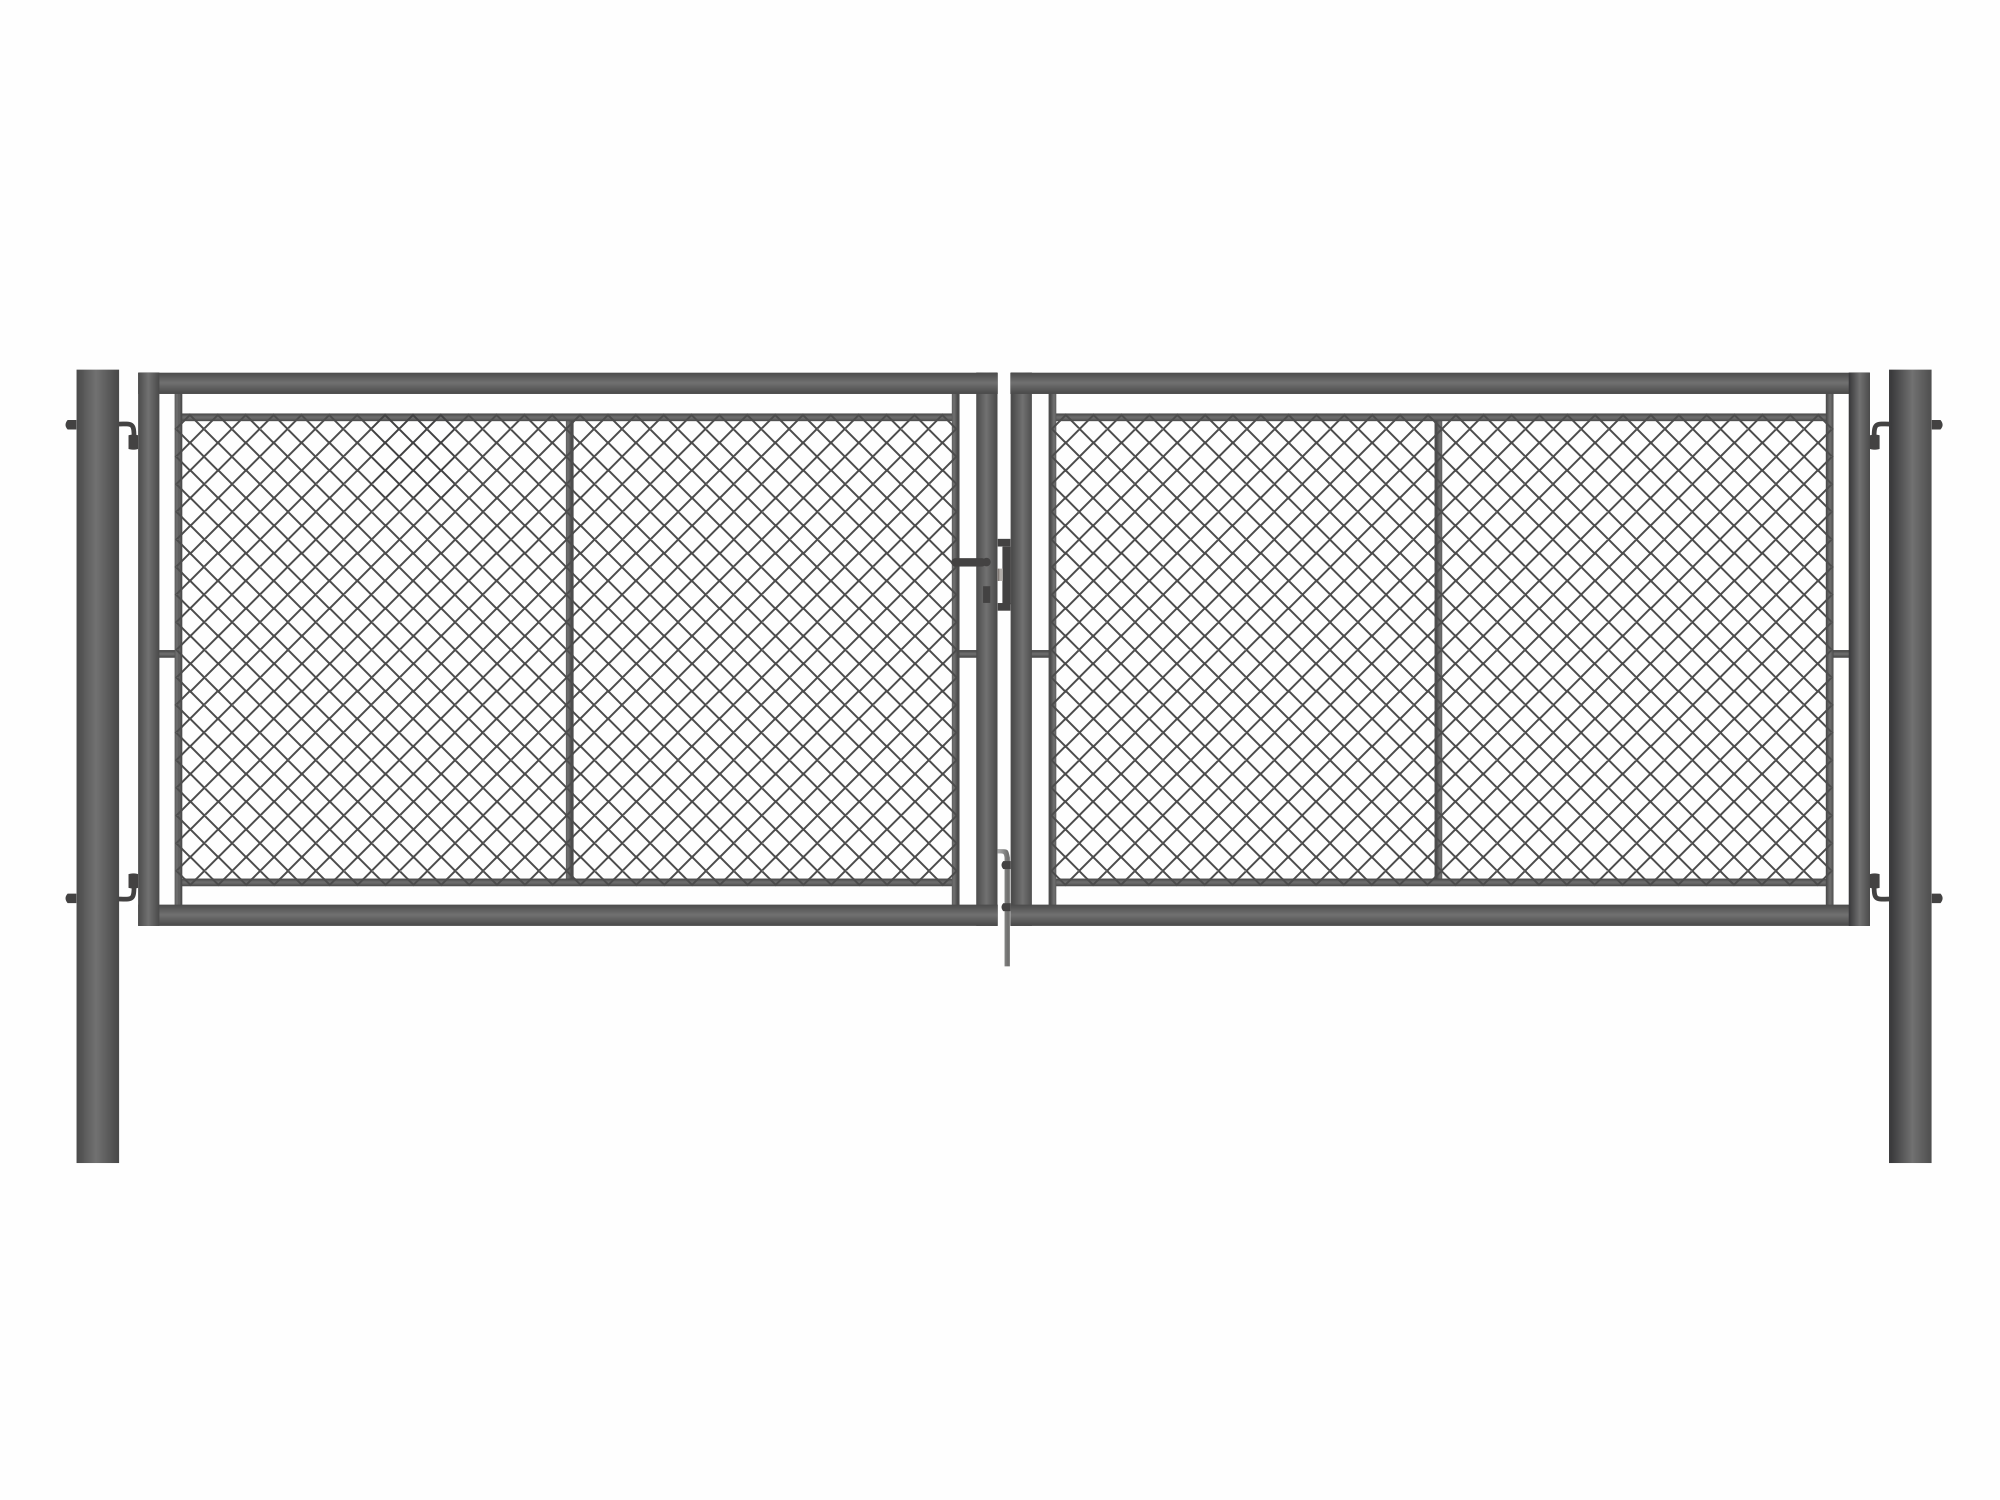 Brána zahradní dvoukřídlá antracit, výška 145 x 500 cm, FAB, s výplní klasického pletiva